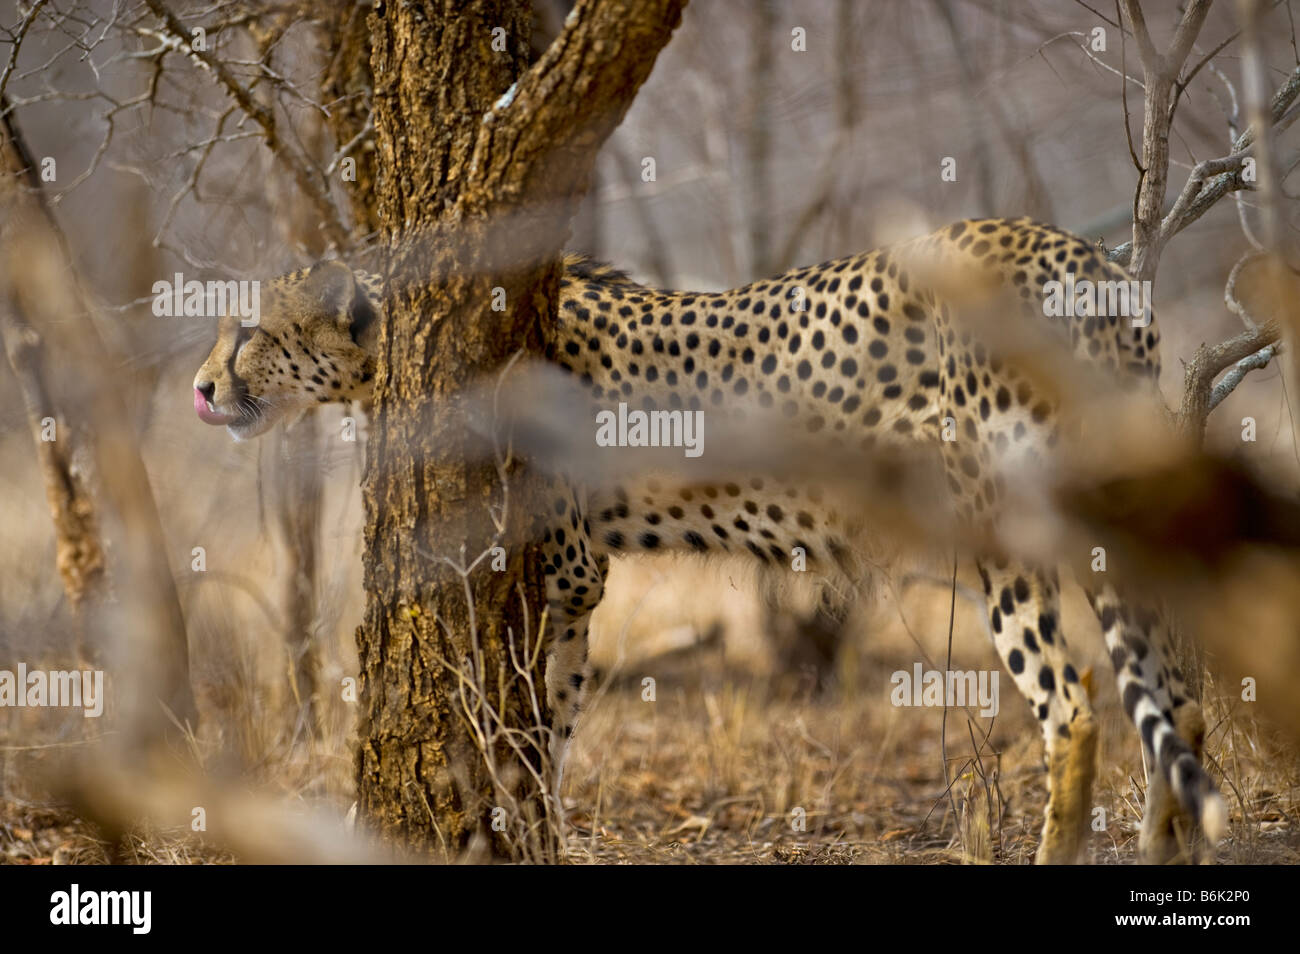 Tierwelt Geparden Gepard Acinonyx Jubatus jagen Jagd laufen laufen Blick suchen männliche Biotope Tarnung Busch b Stockfoto